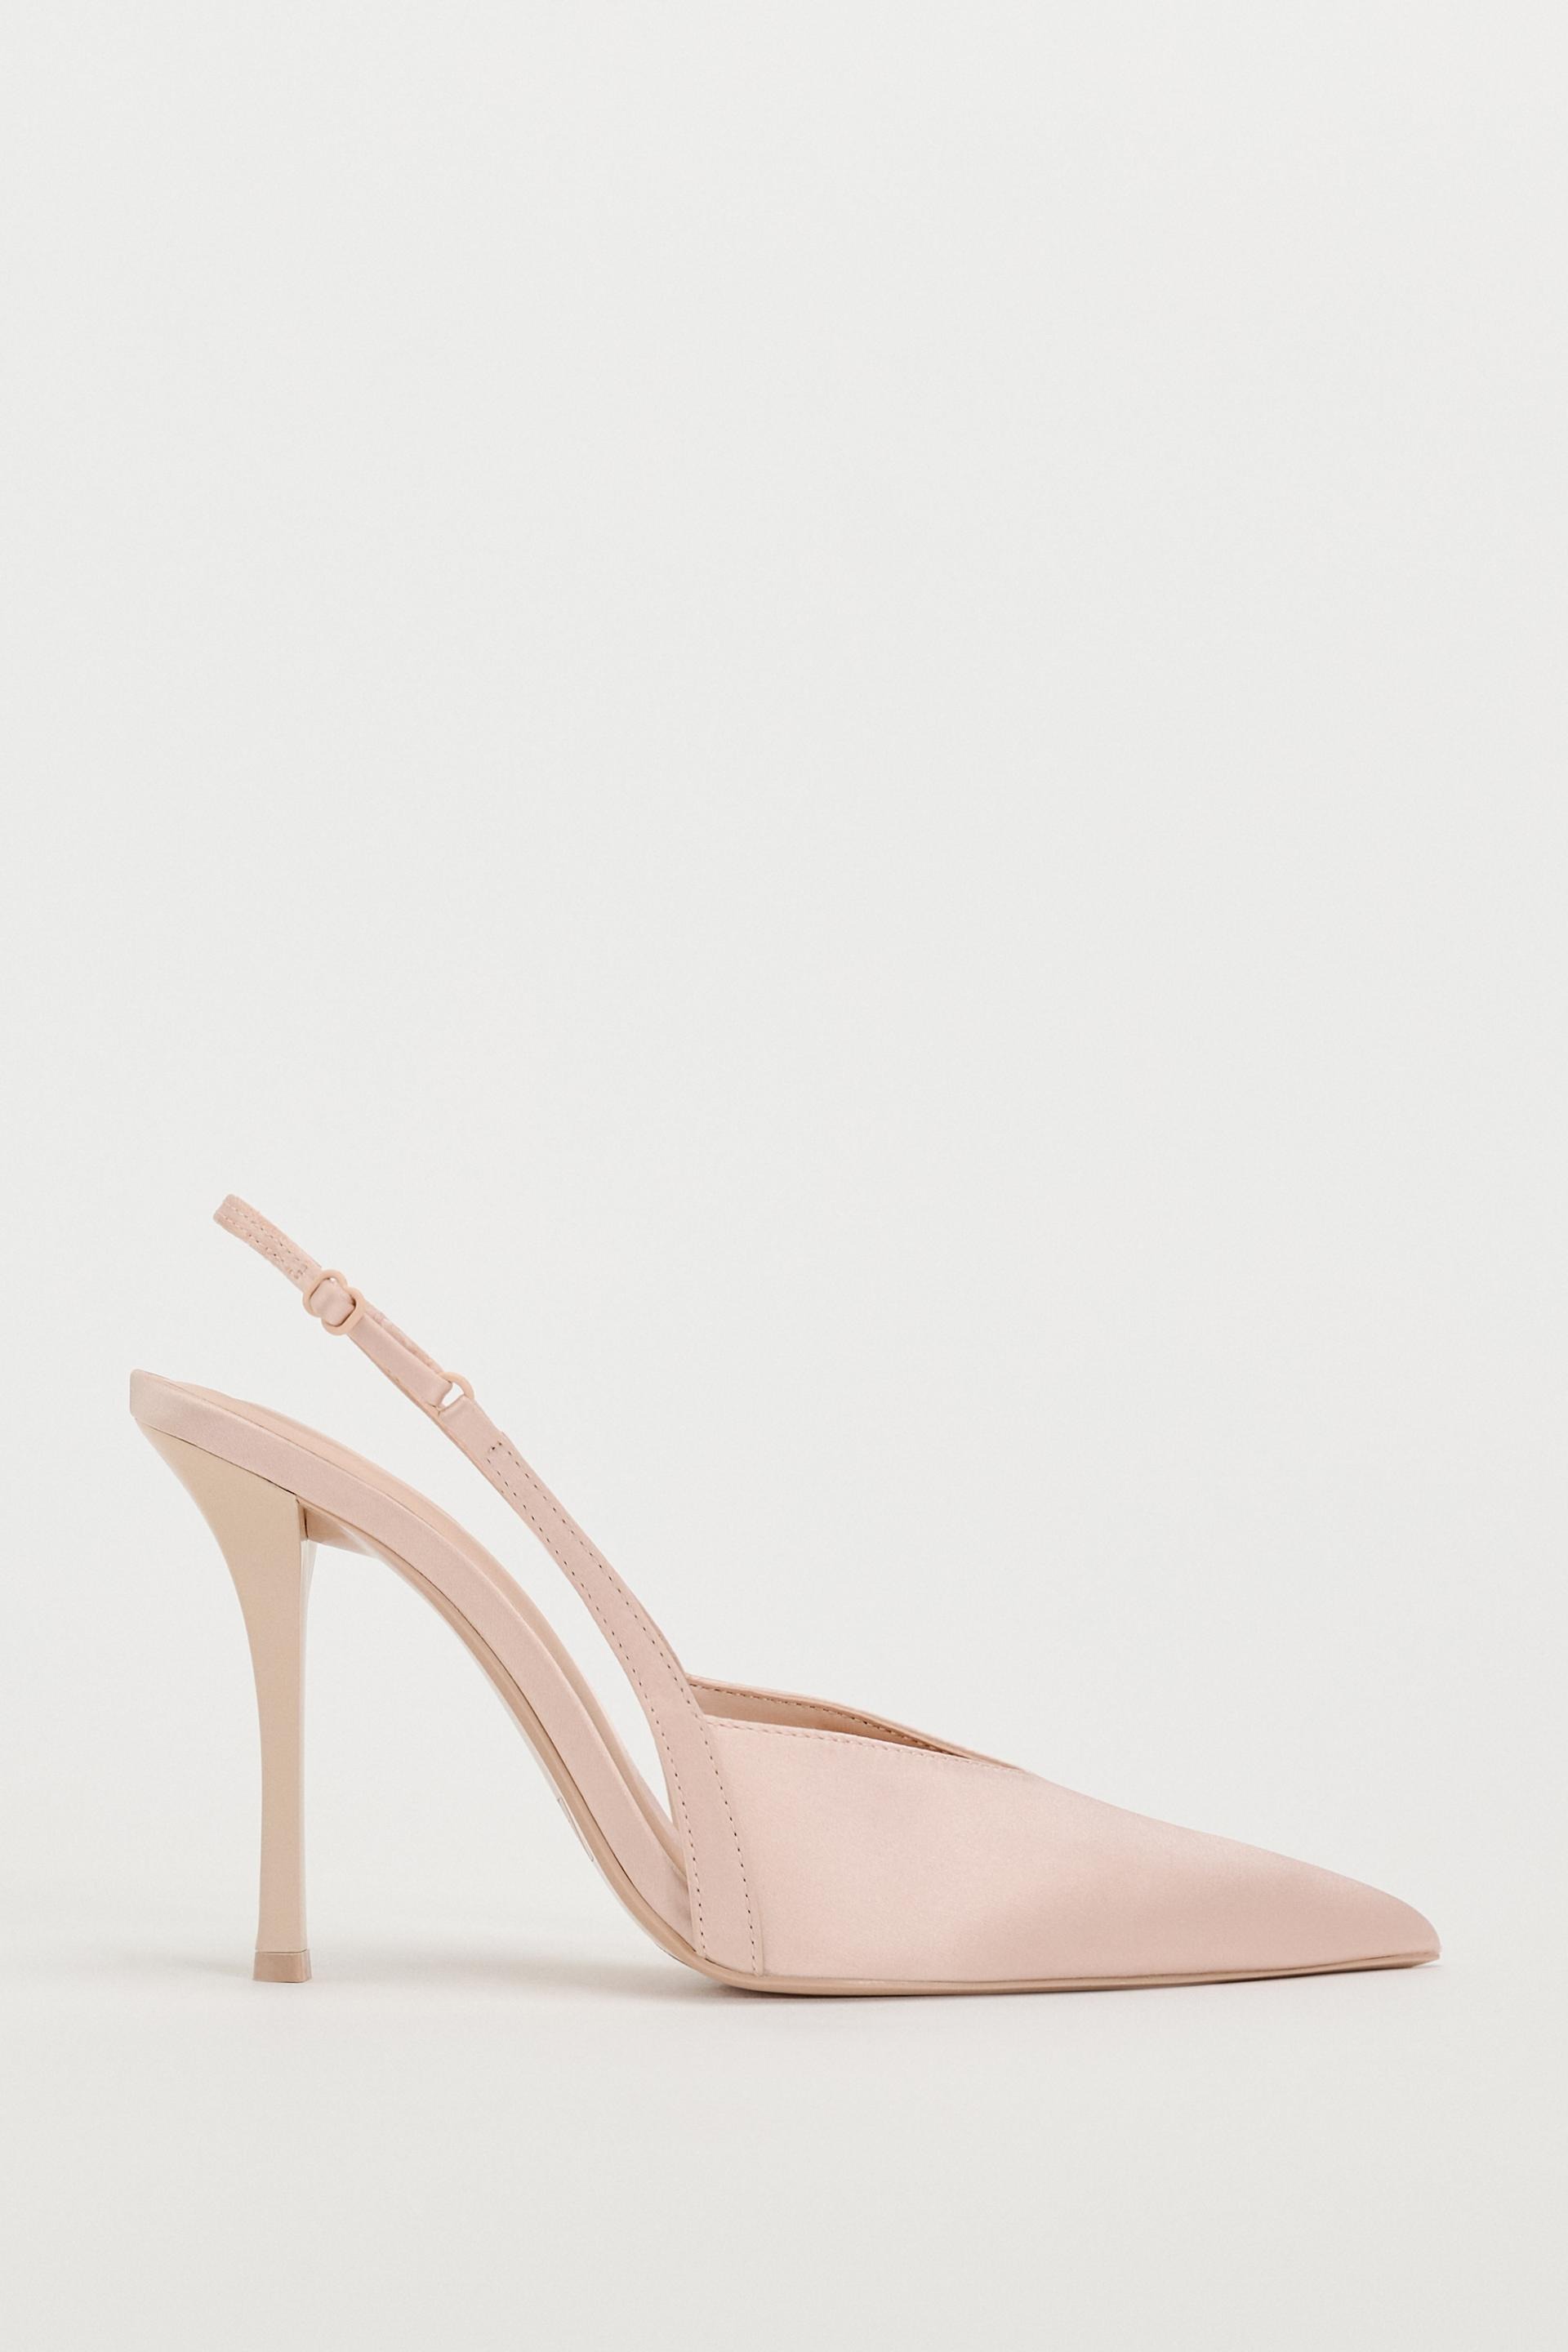 Pink high stiletto heels in satin